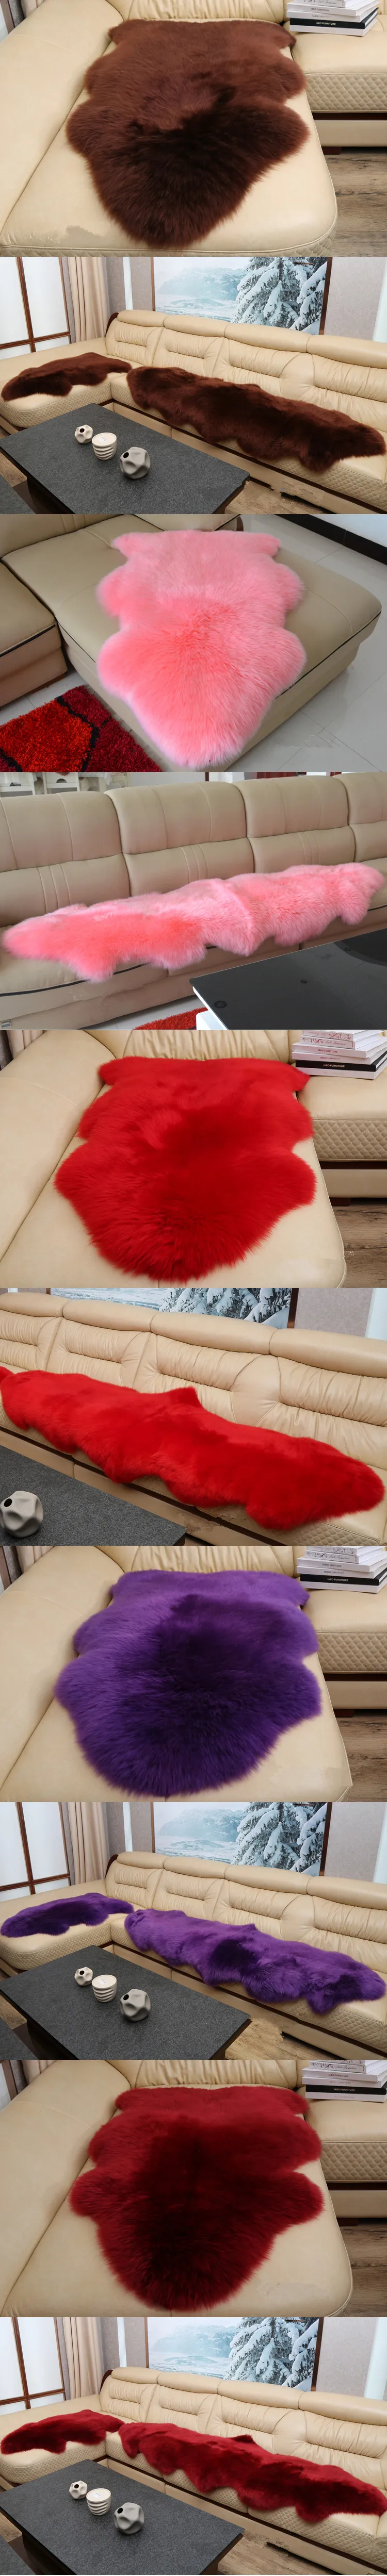 Натуральный овечий мех ковер для гостиной ковер супер люкс сохраняет тепло плотный мягкий tapete лохматый диван Чехол для кресла для дома Коврики